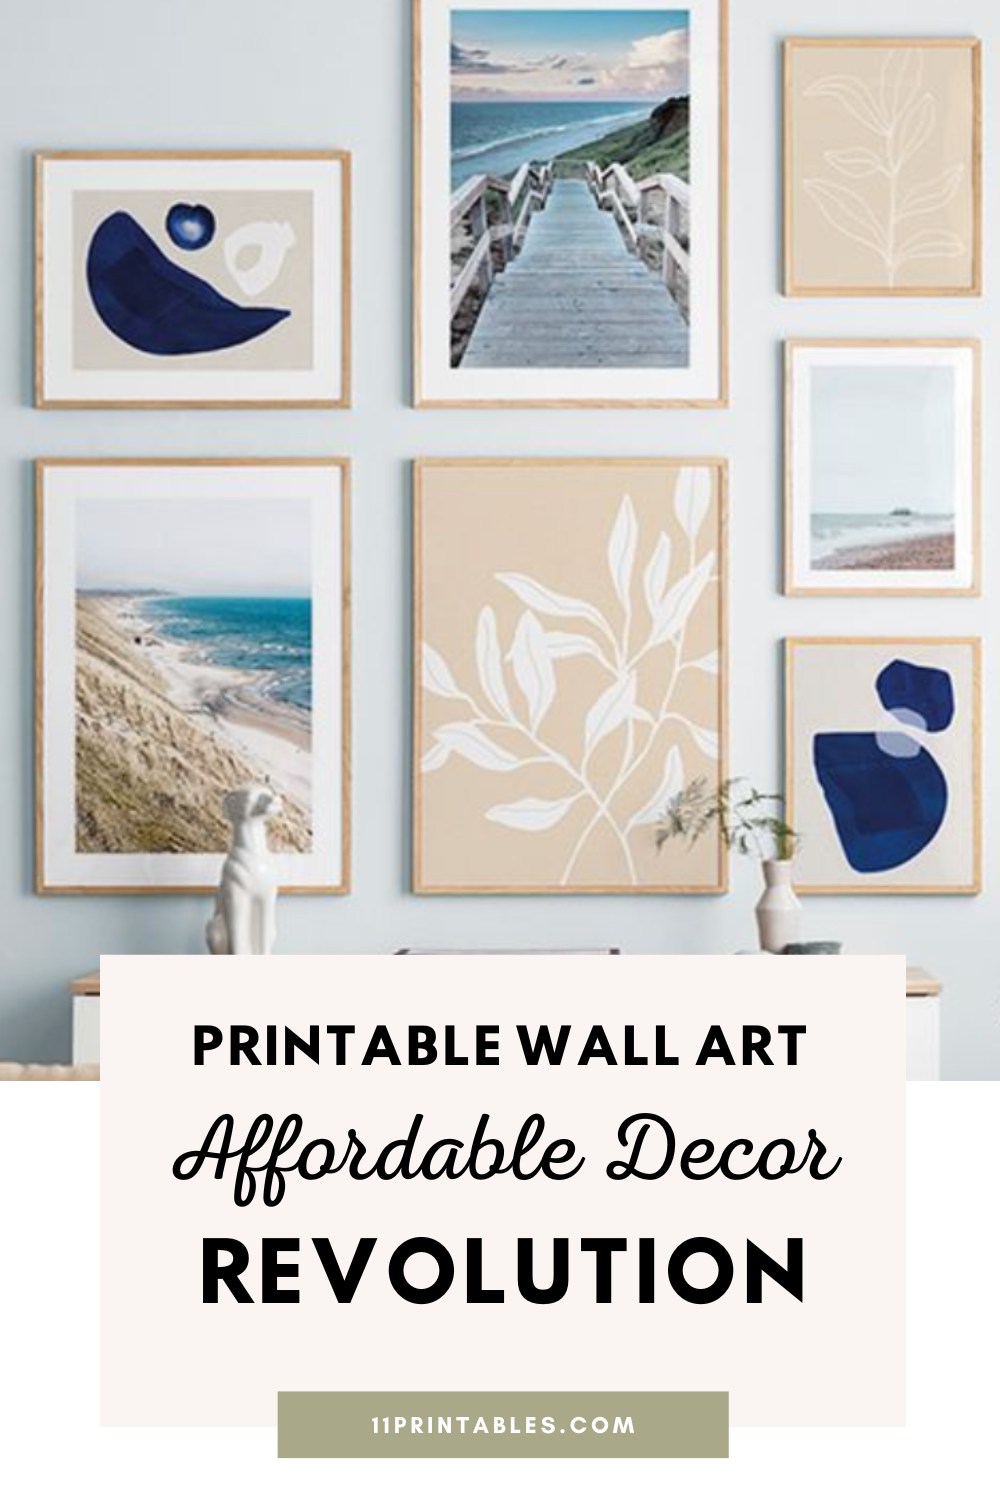 Printable Wall Art: Affordable Home Decor Revolution